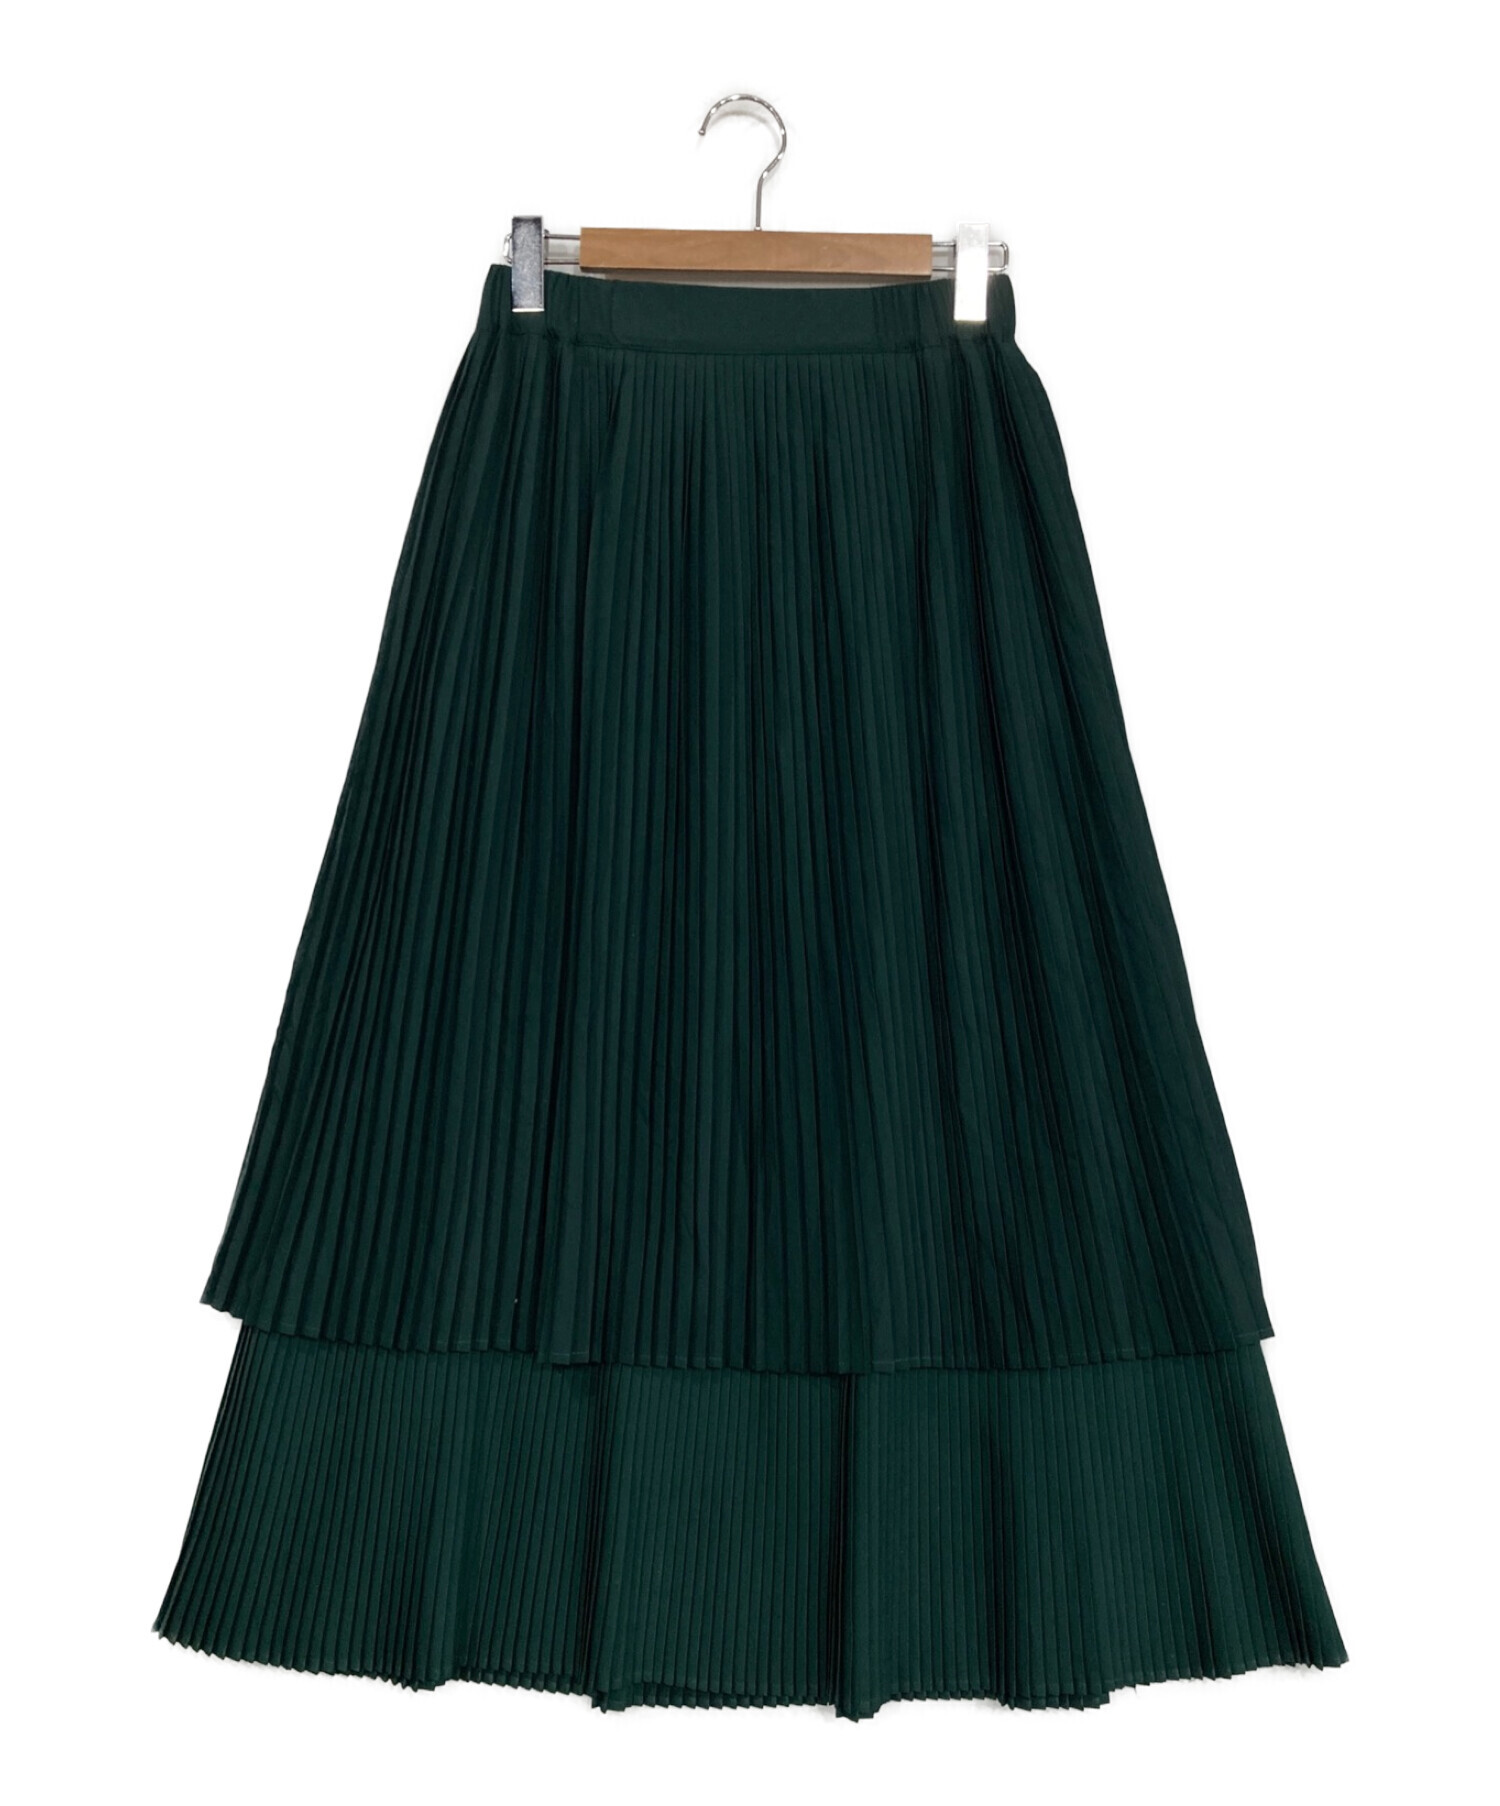 値下げ◎】2段プリーツスカート 緑色 ・ear PAPILLONNER - ロングスカート